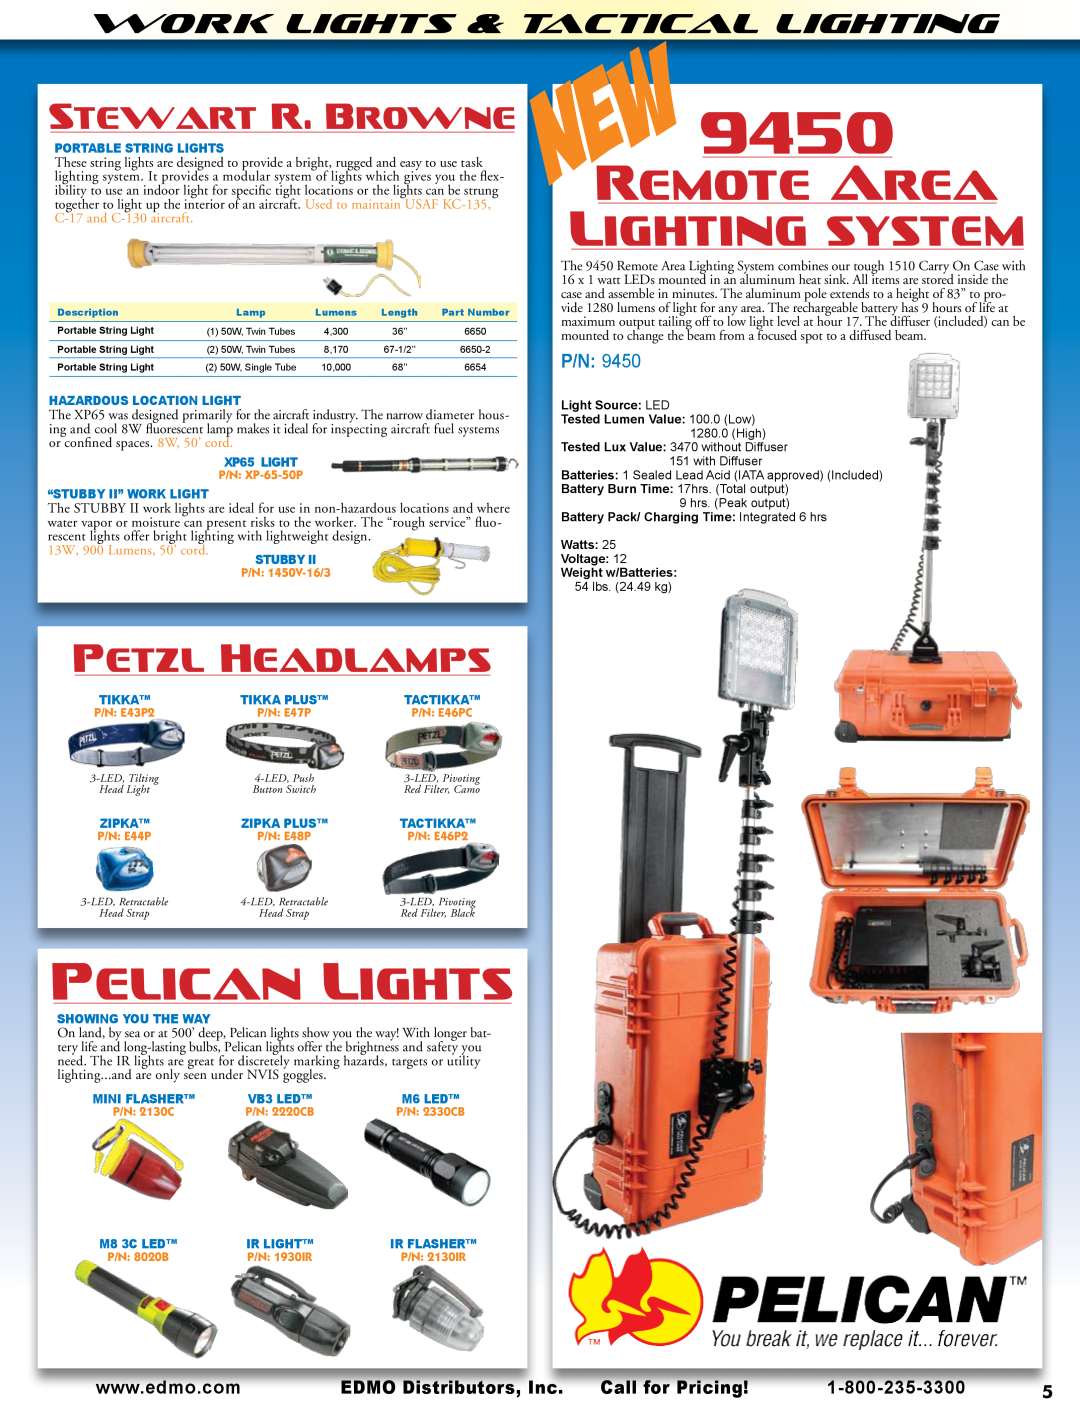 AeroComm SPH Series Remotearea Lightingsystem, Stewartr.Browne, Work Lights & Tactical Lighting, 9450, Pelicanlights, P/N 